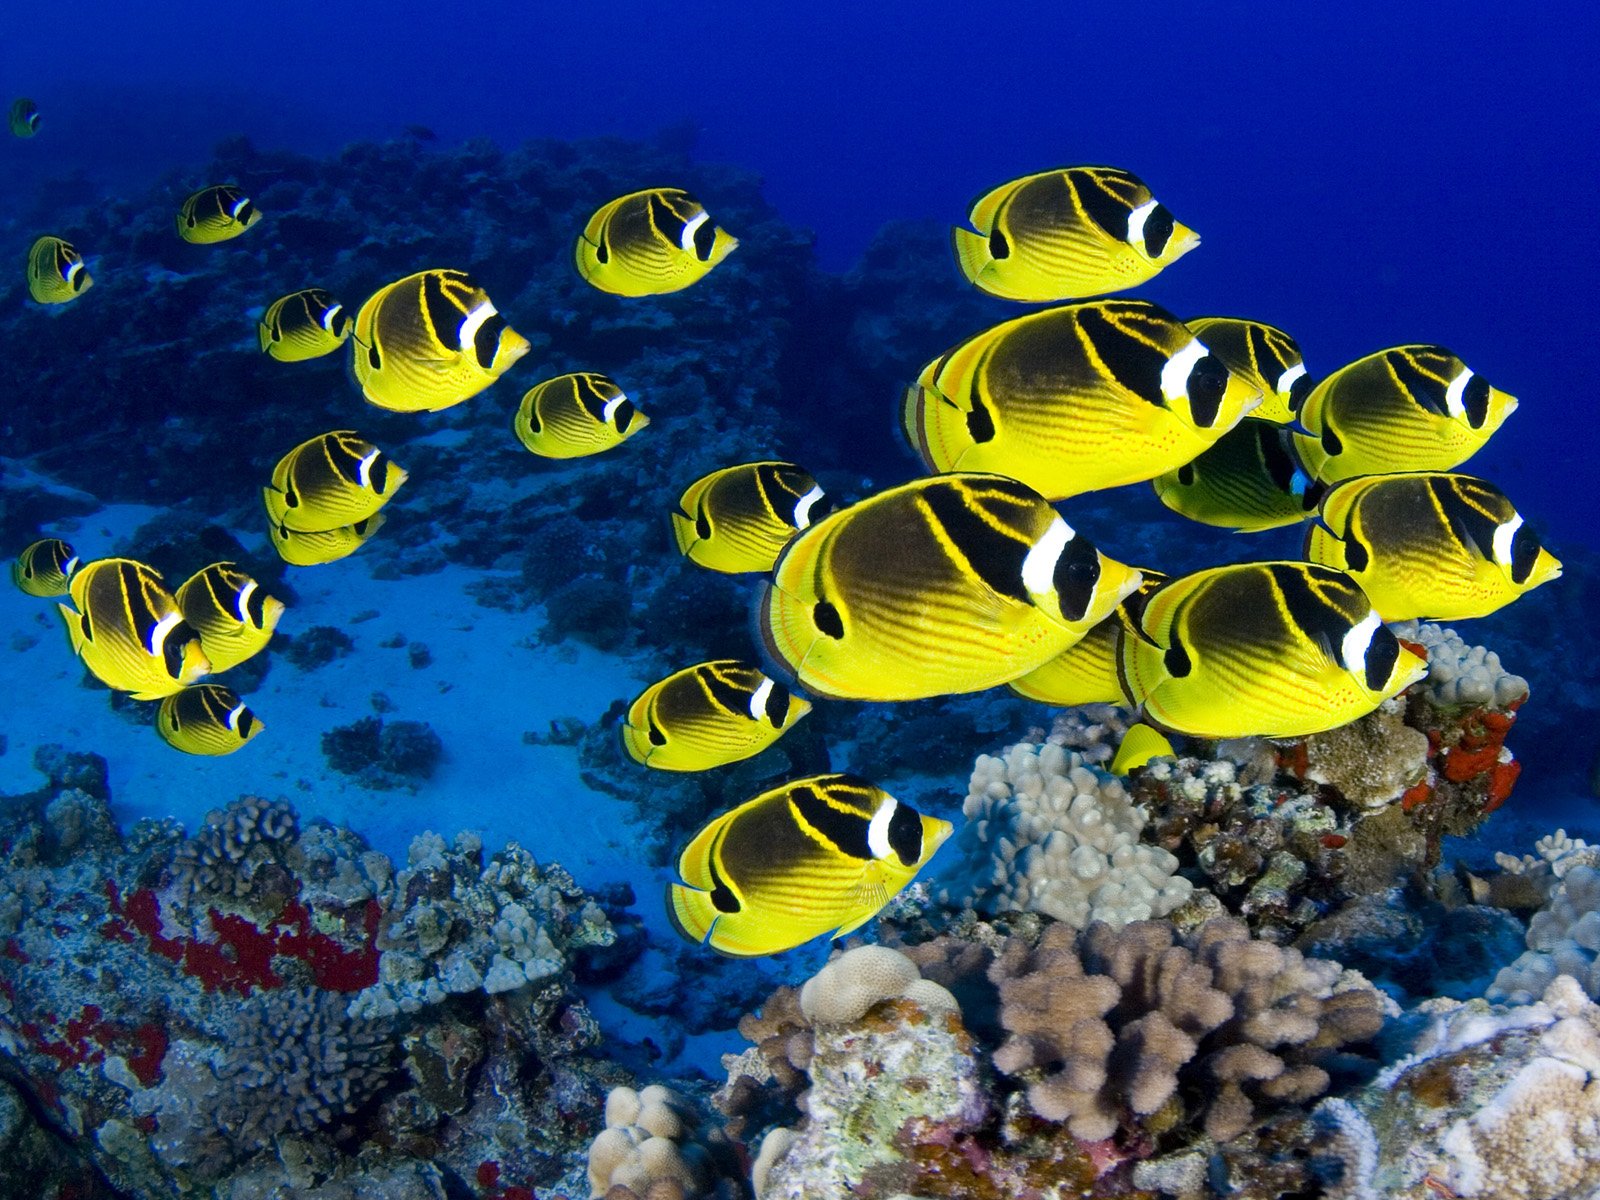 butterflyfish, Tropical, Ocean, Sea, Underwater Wallpapers HD / Desktop ...